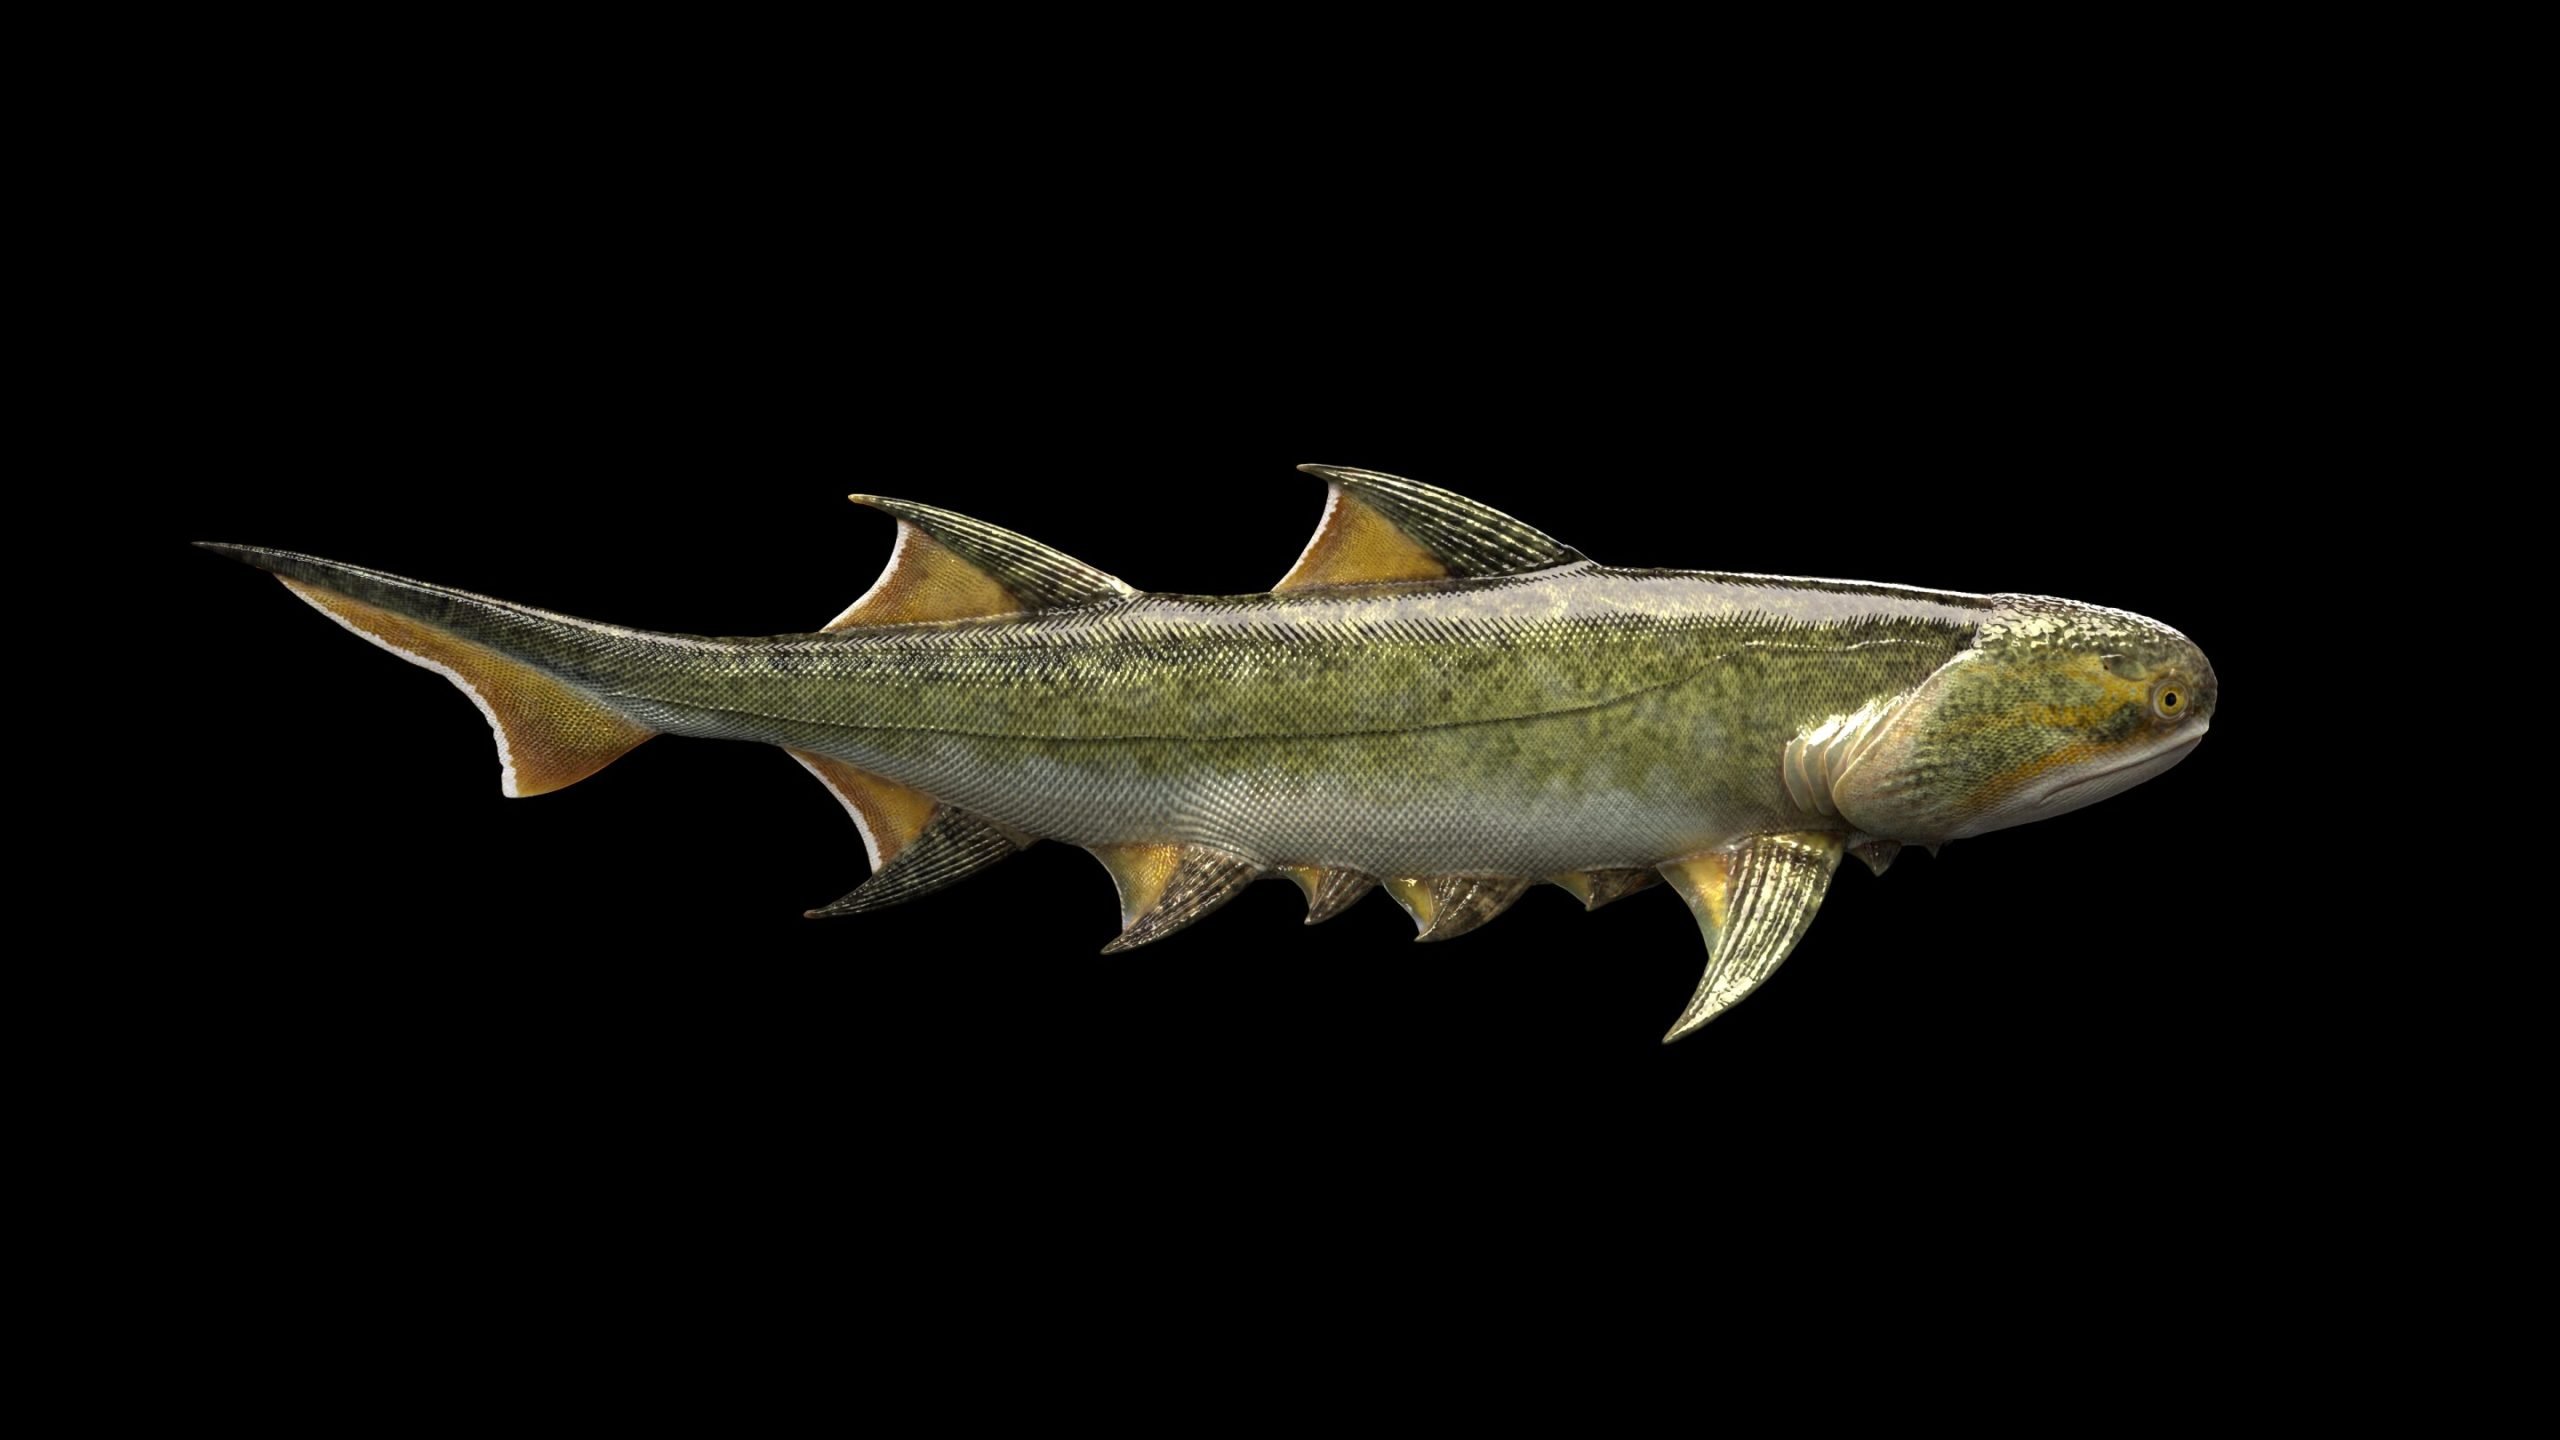 Τα αρχαιότερα σαγόνια που έχουν ποτέ βρεθεί: Όσα ξέρουμε για το ψάρι Fanjingshania